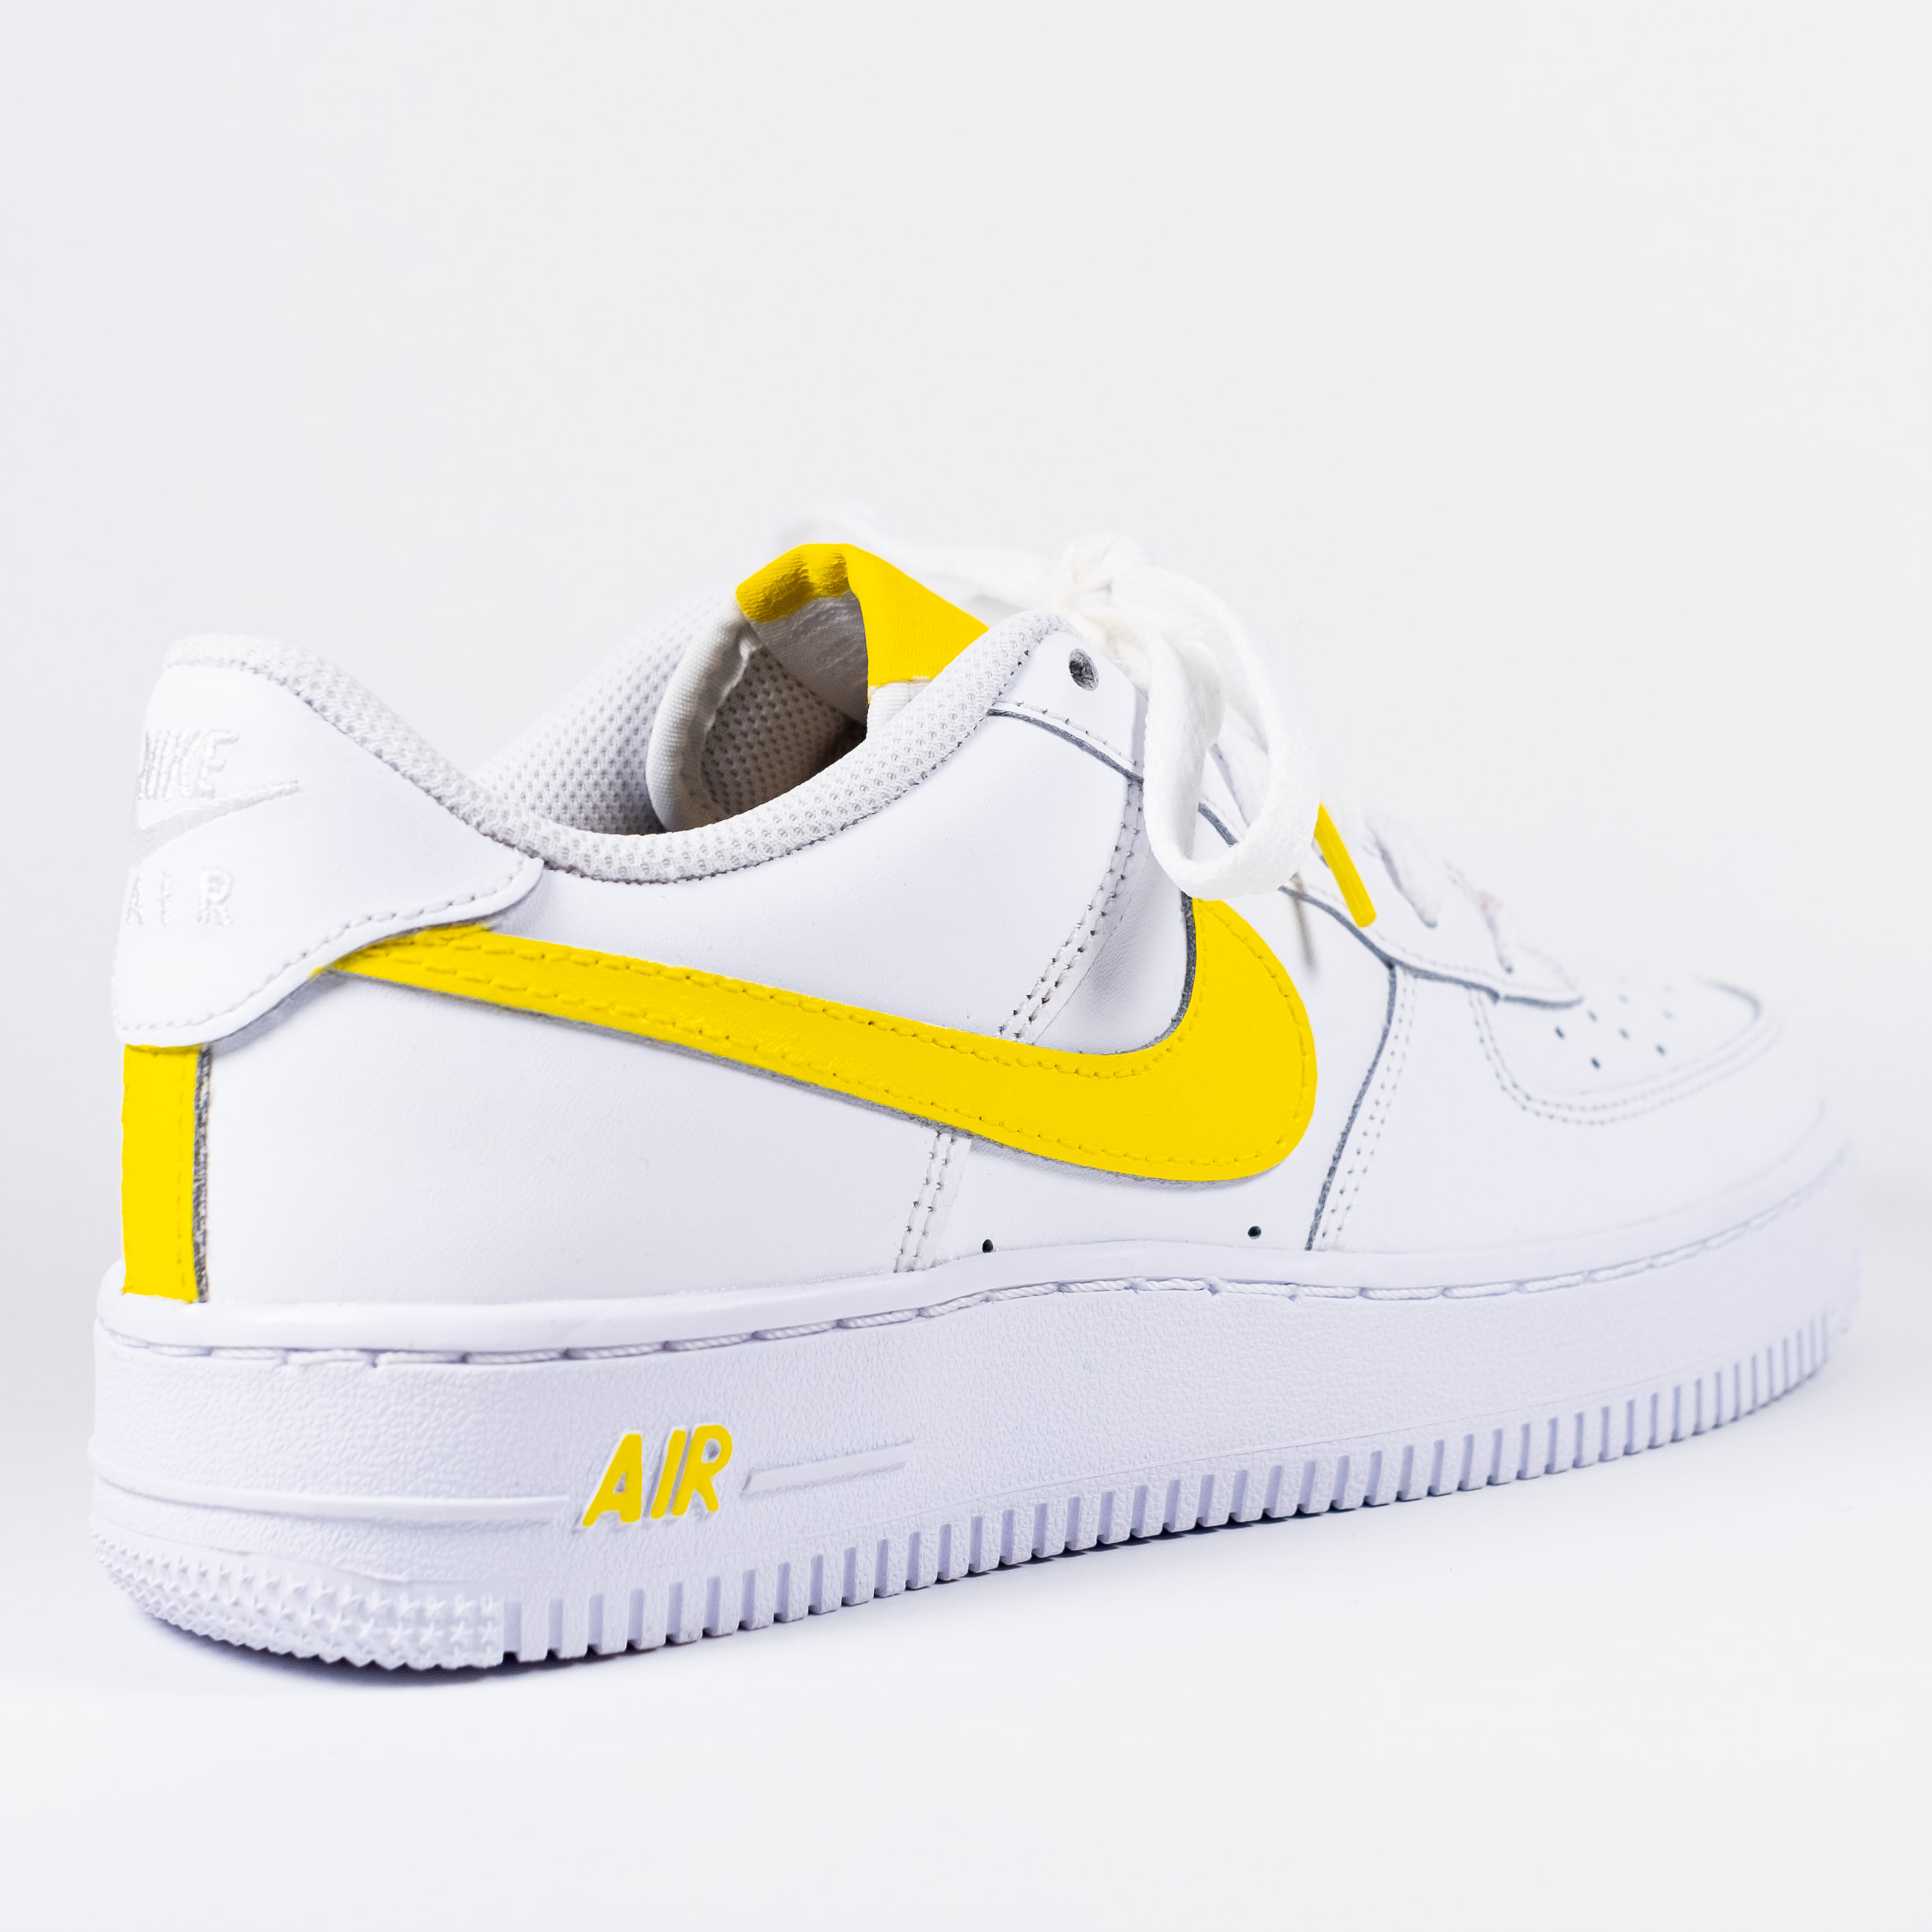 Beautiful custom Honeybee Nike Air Force 1. Bright yellow on white